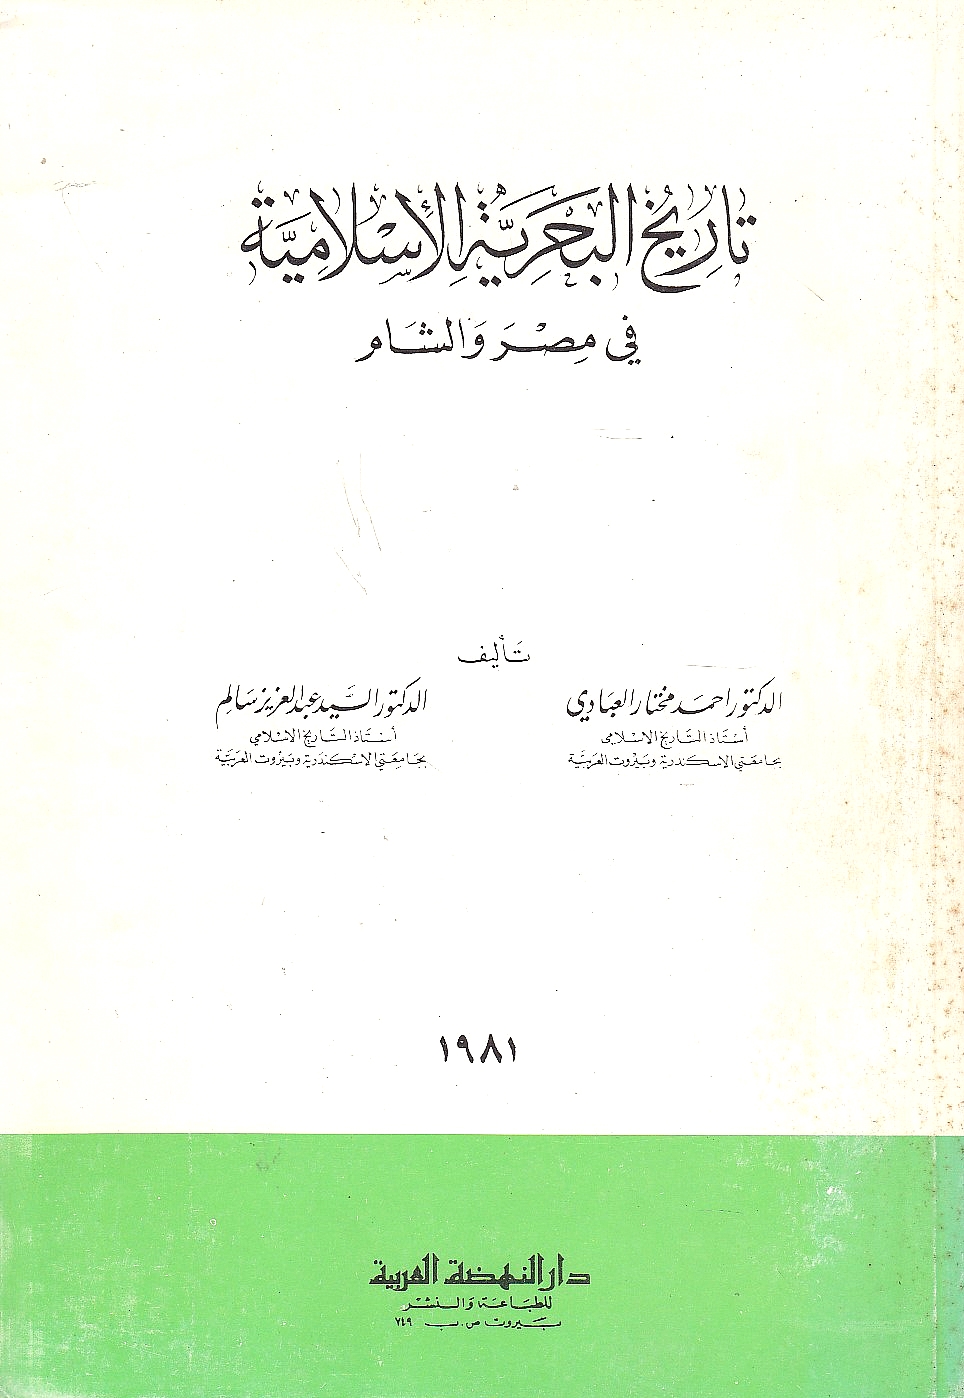 Tarikh al-Bahriyah al-Islamiyah fi Misr wa al-Sham.